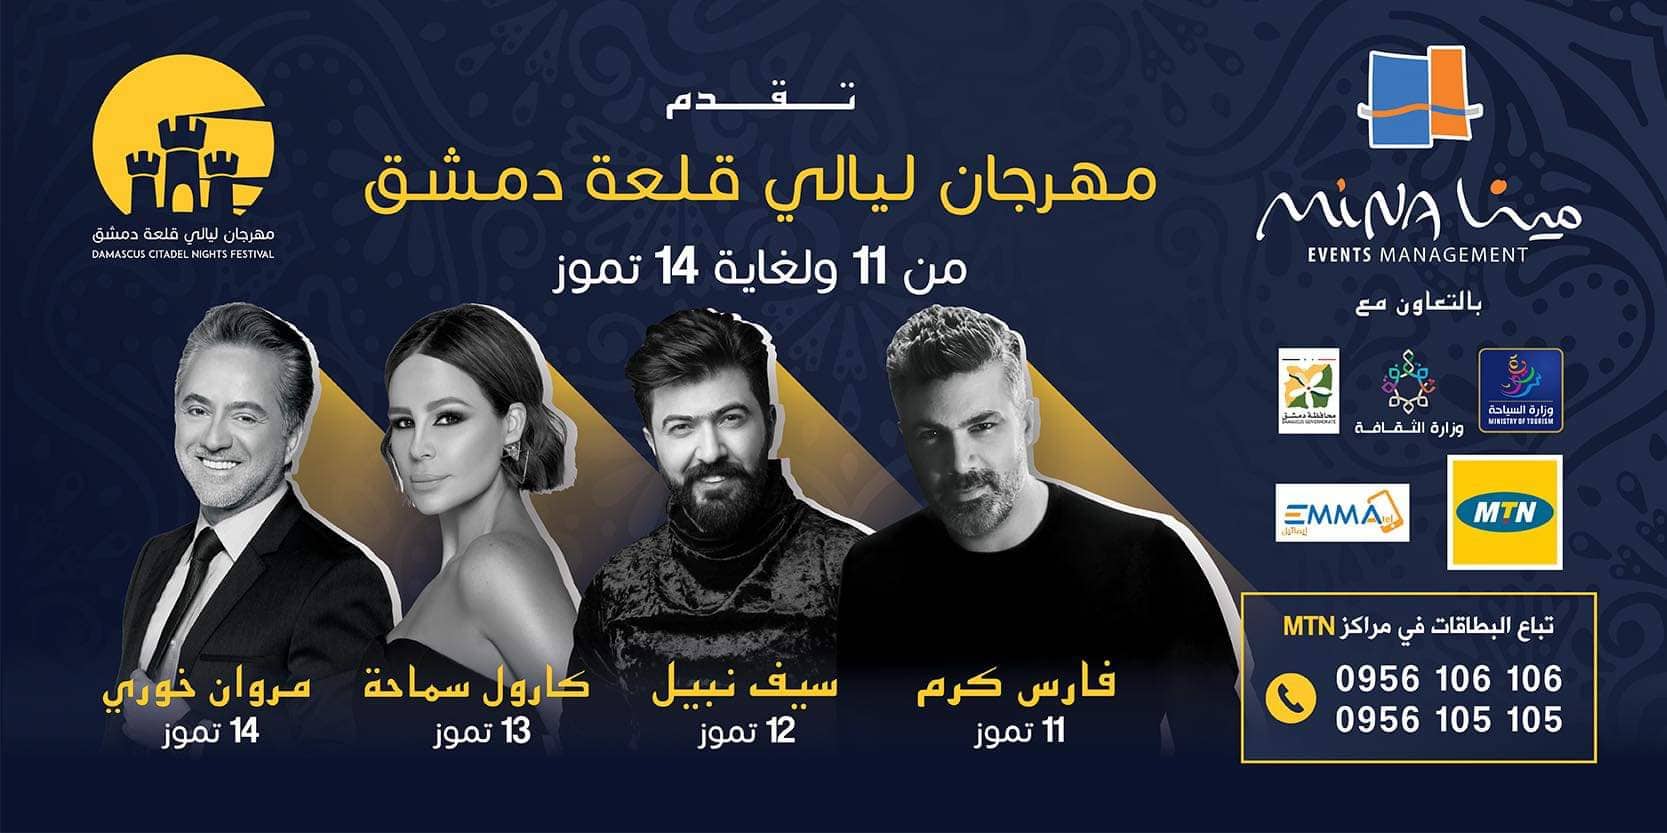 دام برس : دام برس | برعاية MTN SYRIA  مهرجان ليالي قلعة دمشق من 11 وحتى 14 تموز  2019 